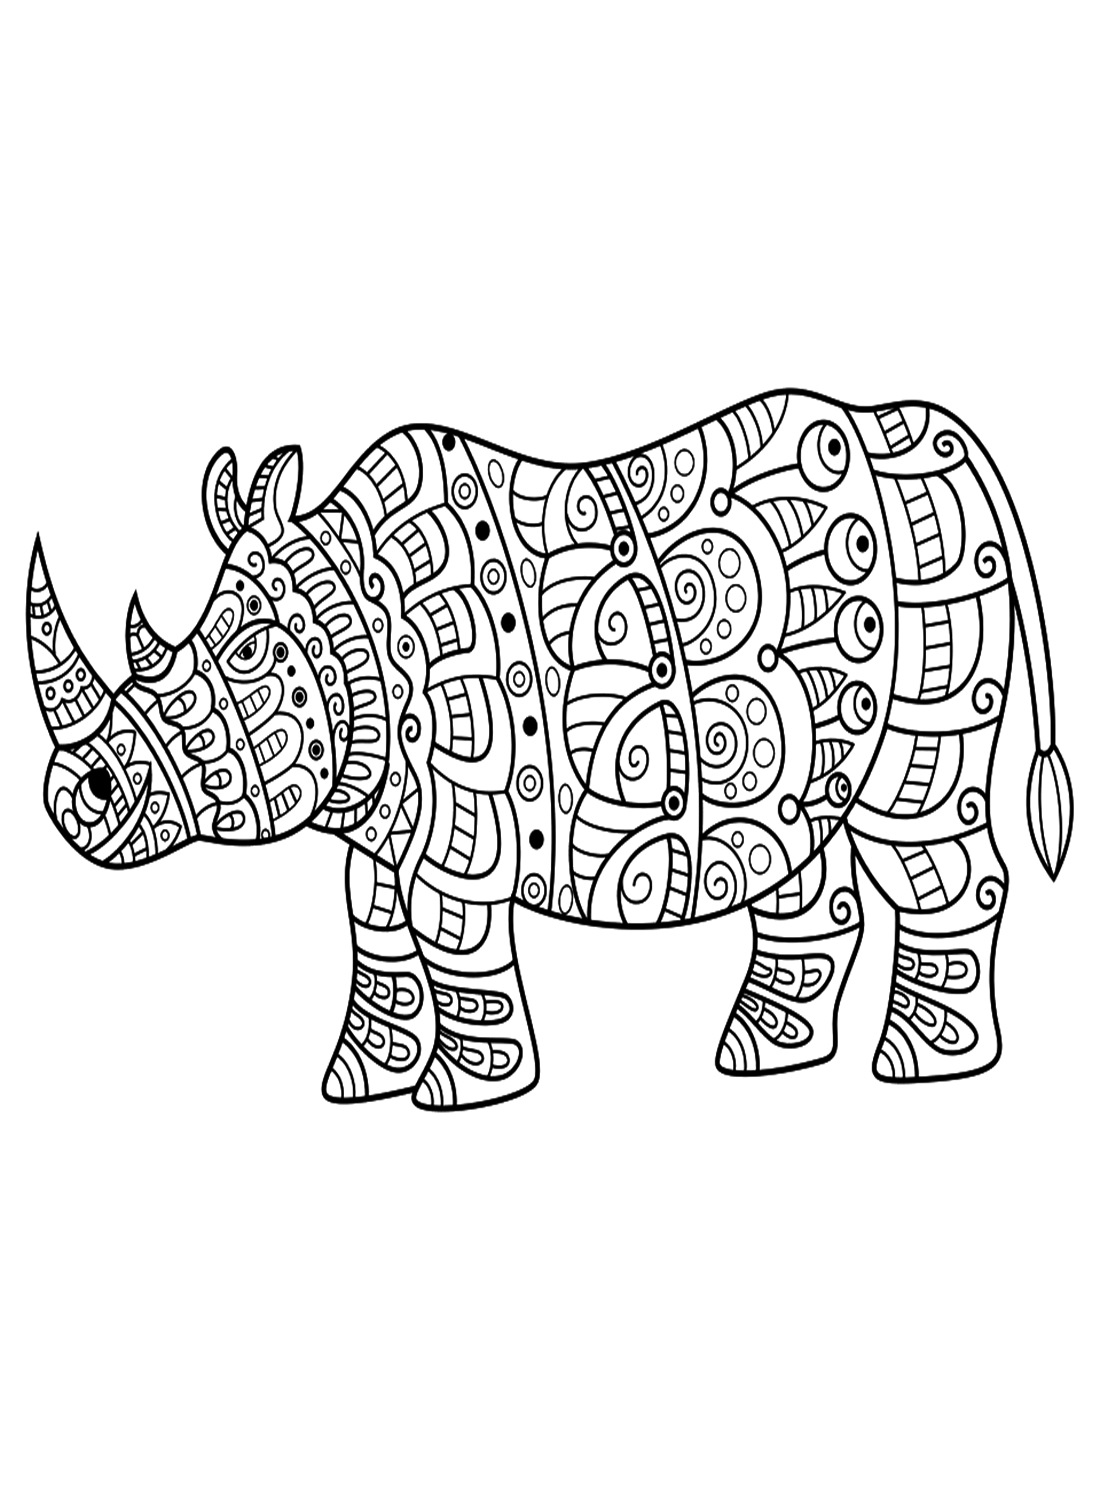 Раскраска Носорог в стиле дзентангл